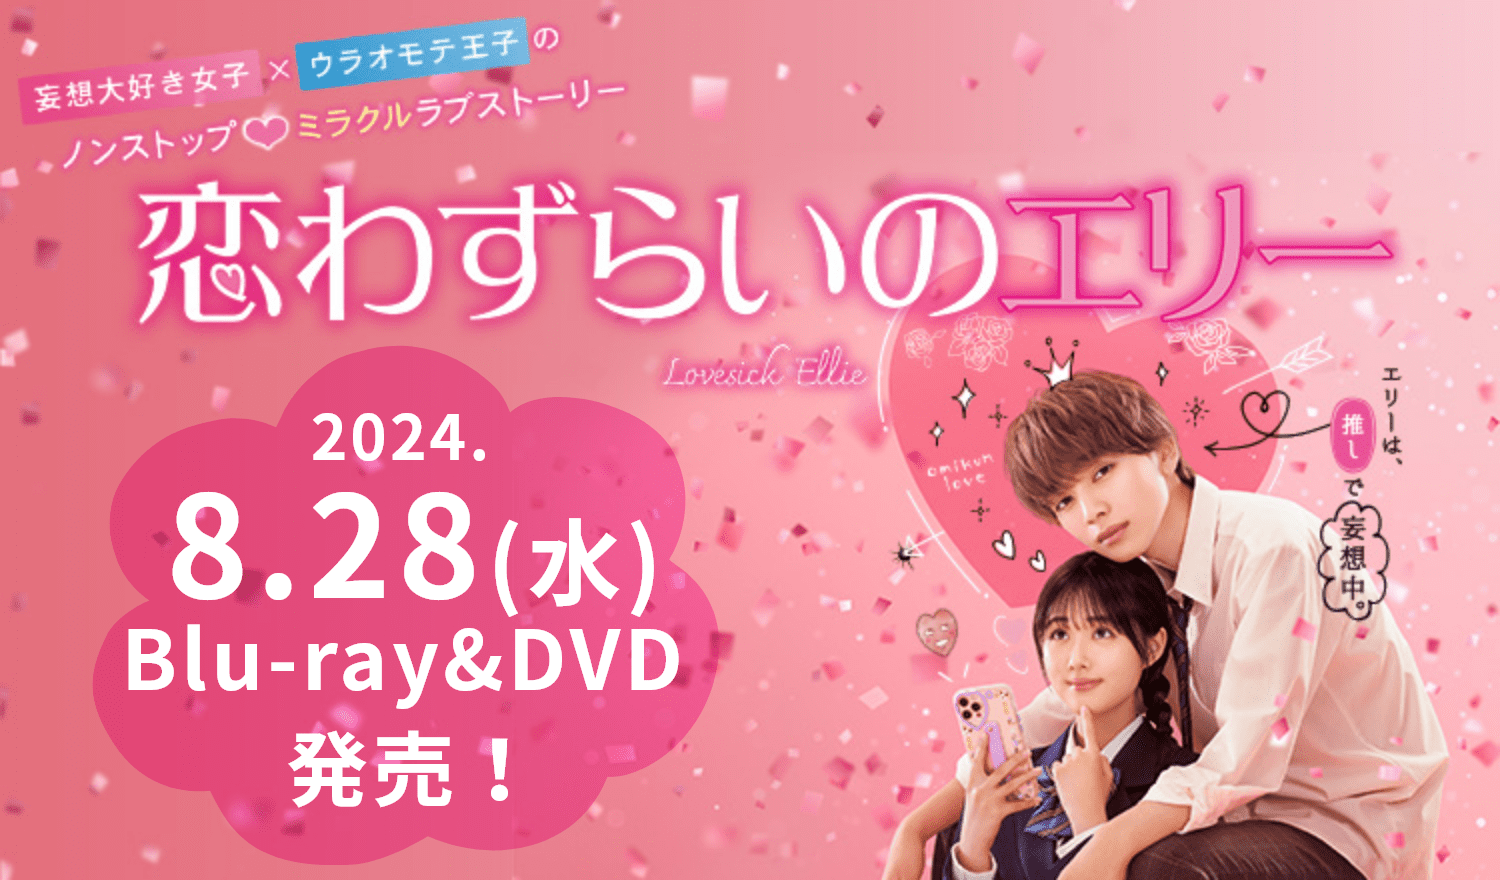 2024.8.28(水) Blu-ray&DVD 発売！映画『恋わずらいのエリー』